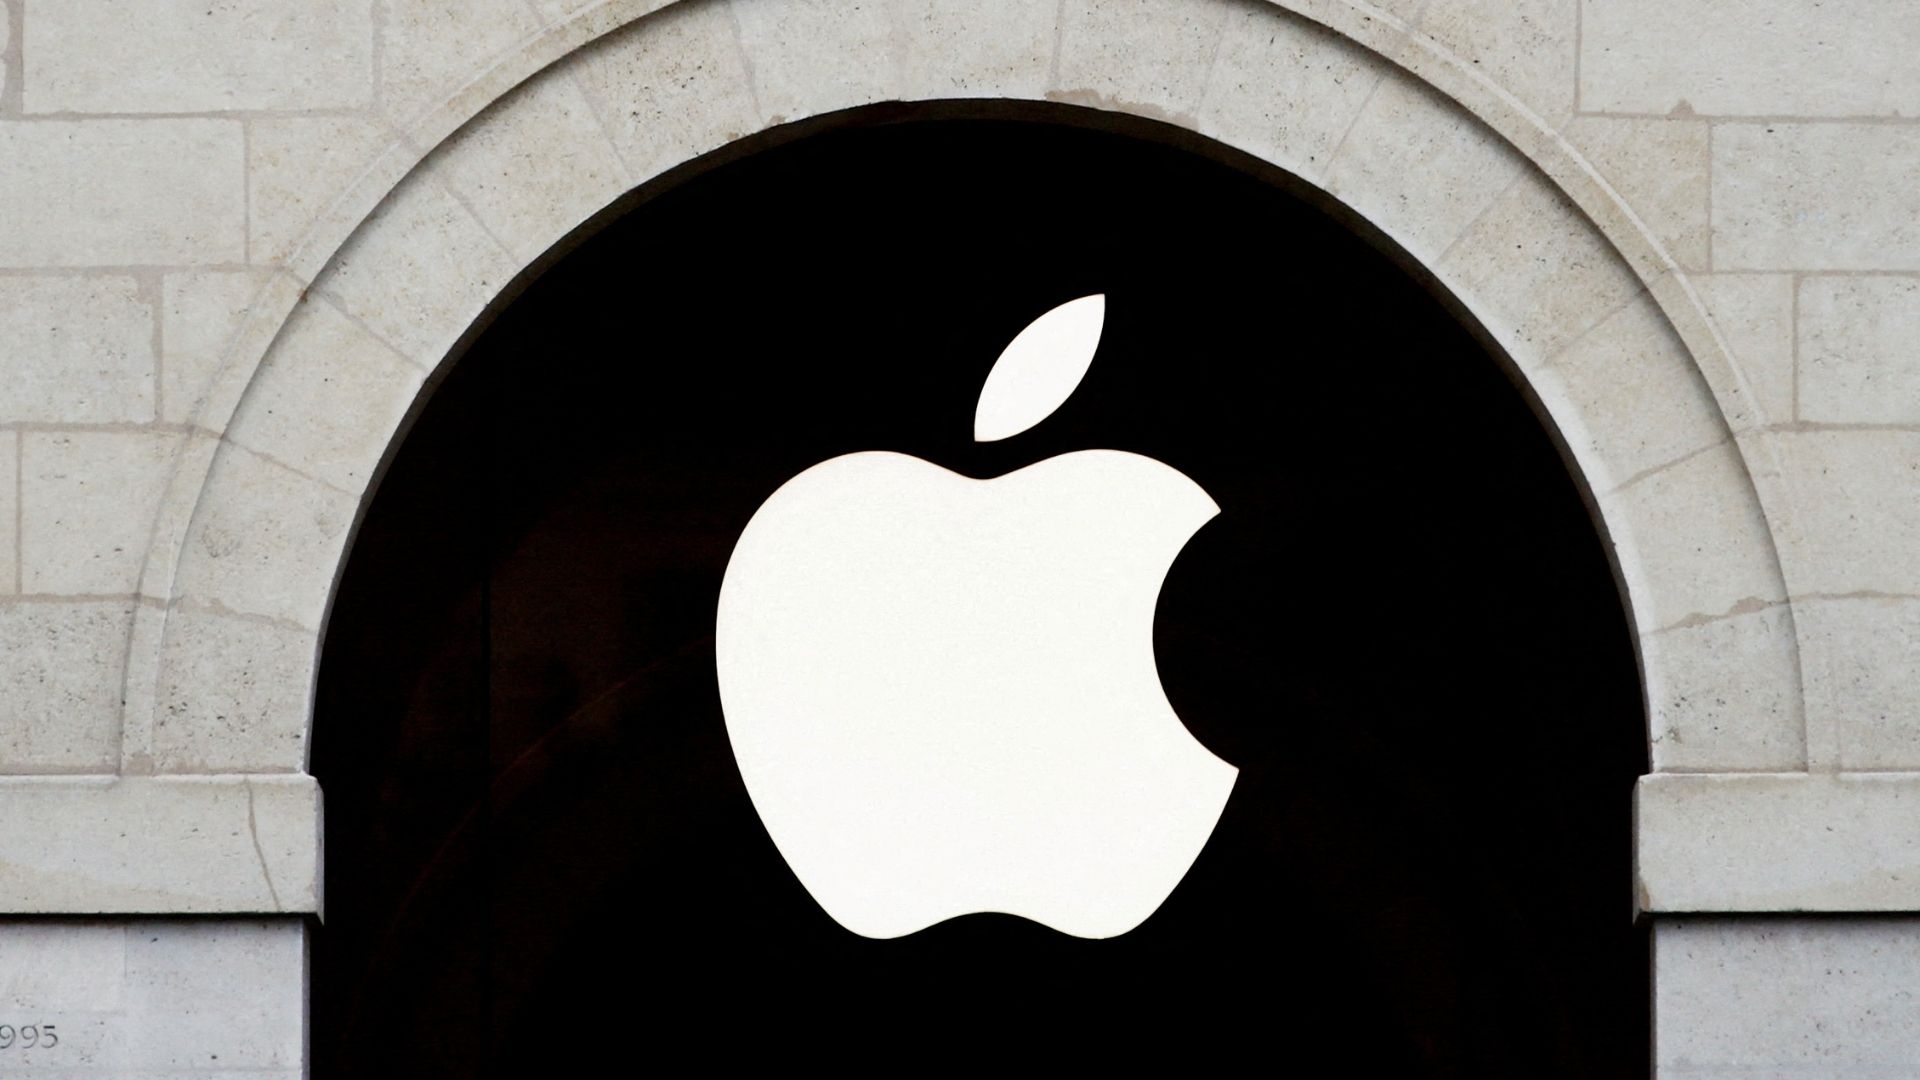 Meral Erden: Apple, Kendine Ait Yapay Zekâ Modellerini Eğitmek İçin Ünlü Haber Şirketlerine Milyonlar Dökmeyi Planlıyor! 1